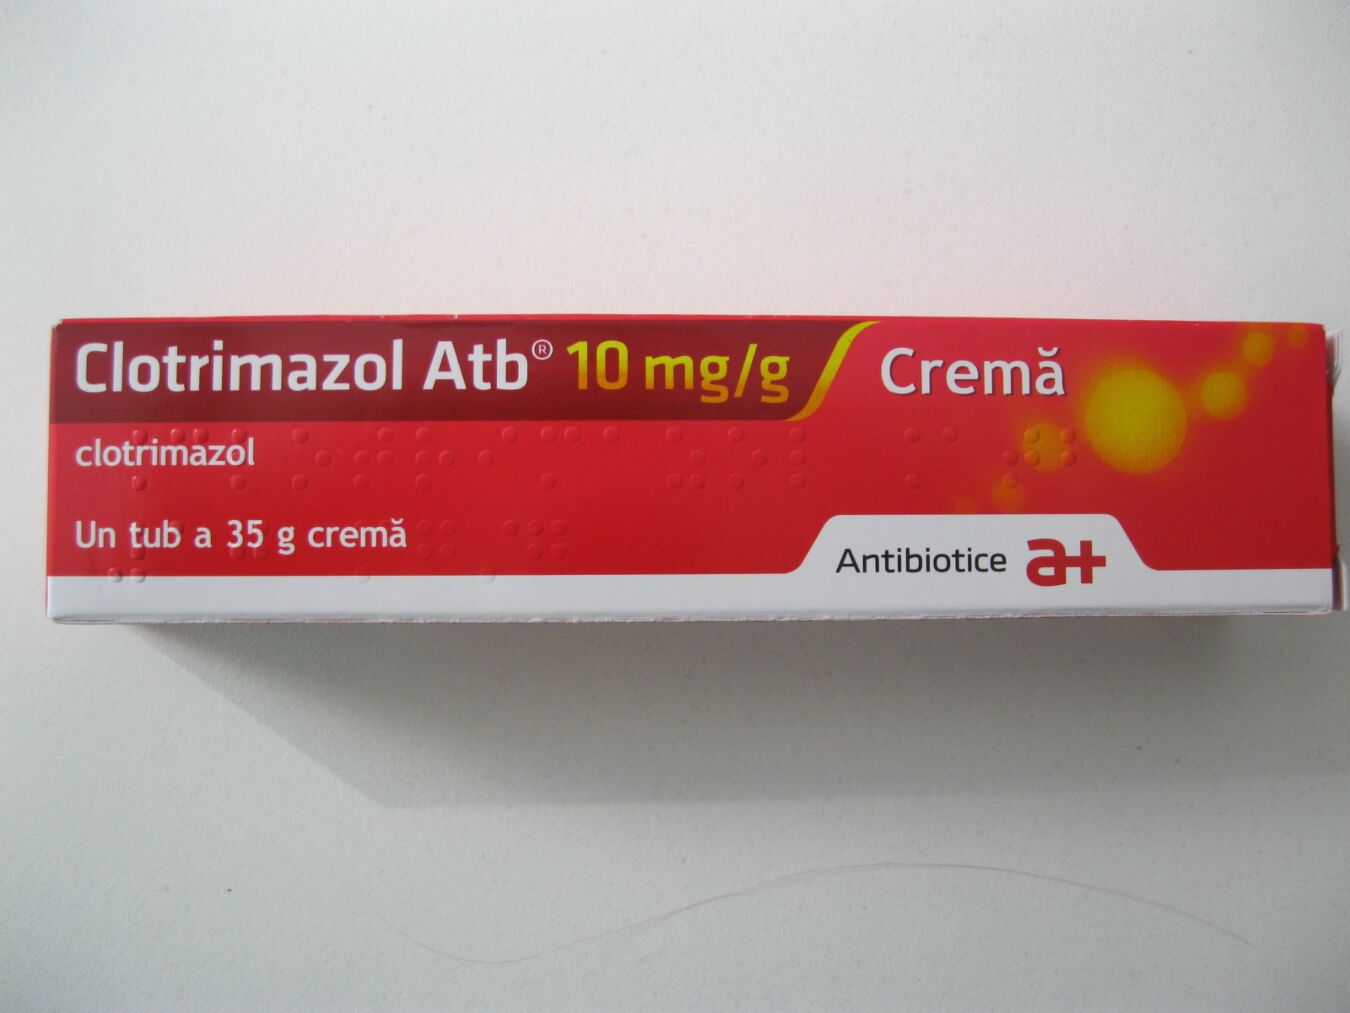 Medicul urolog a prescris unguent de clotrimazol și antibiotice pentru prostatită